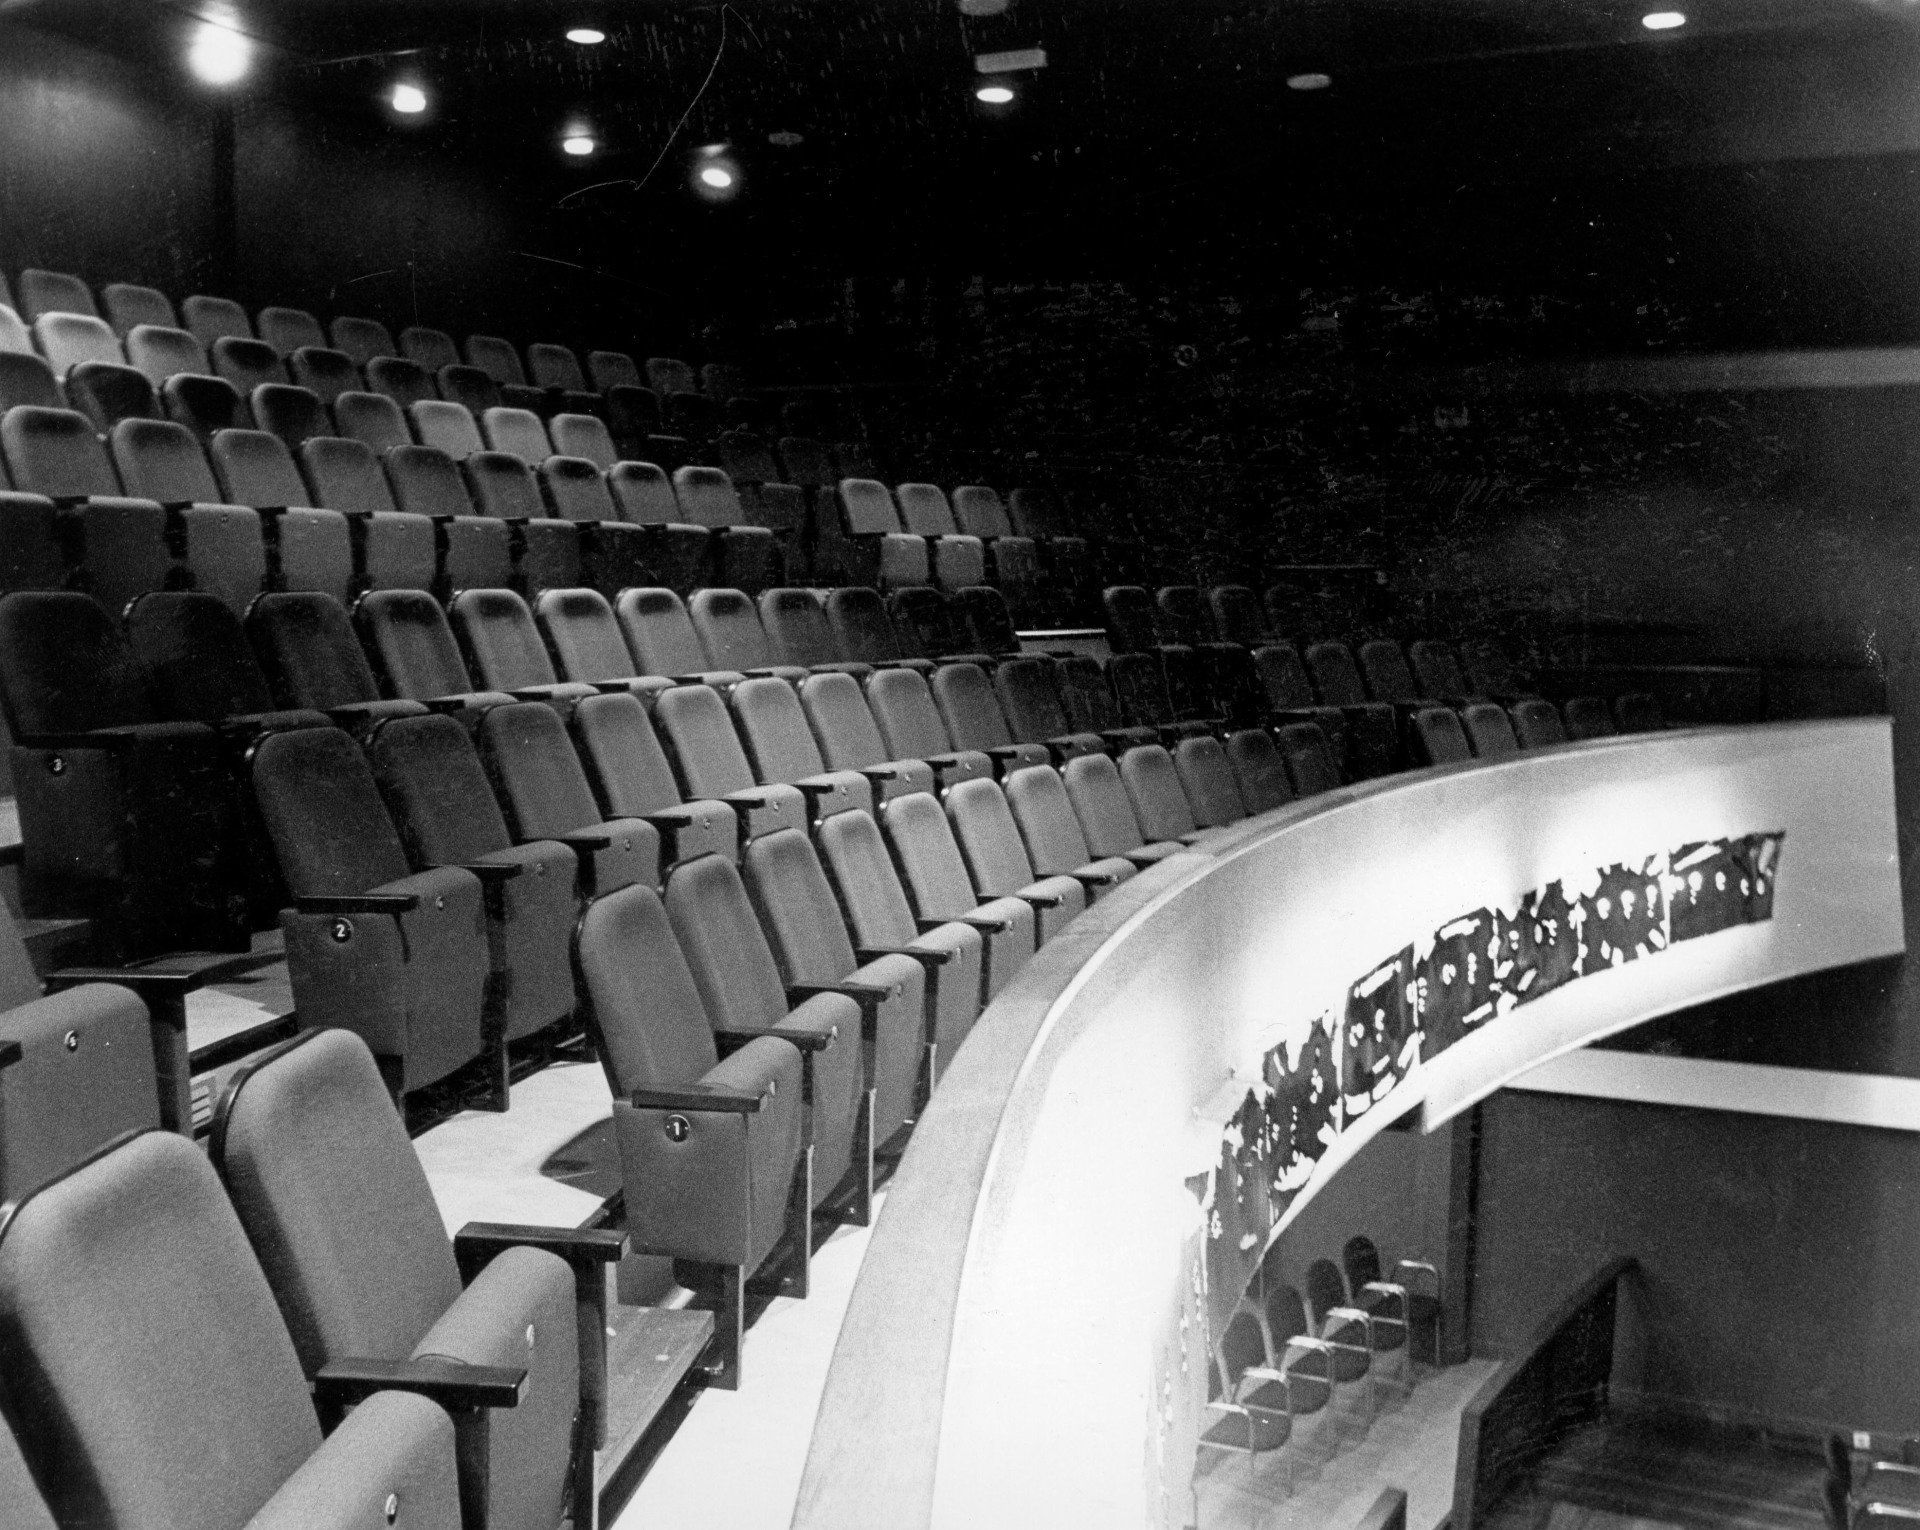 Balkon concertzaal, Paardenstraat, foto: Johan Dingeman Cornelis Berrevoets (1928-2014) 2 oktober 1987. Gemeentearchief Schouwen-Duiveland, Beeldbank Schouwen-Duiveland, nr KZN-1856